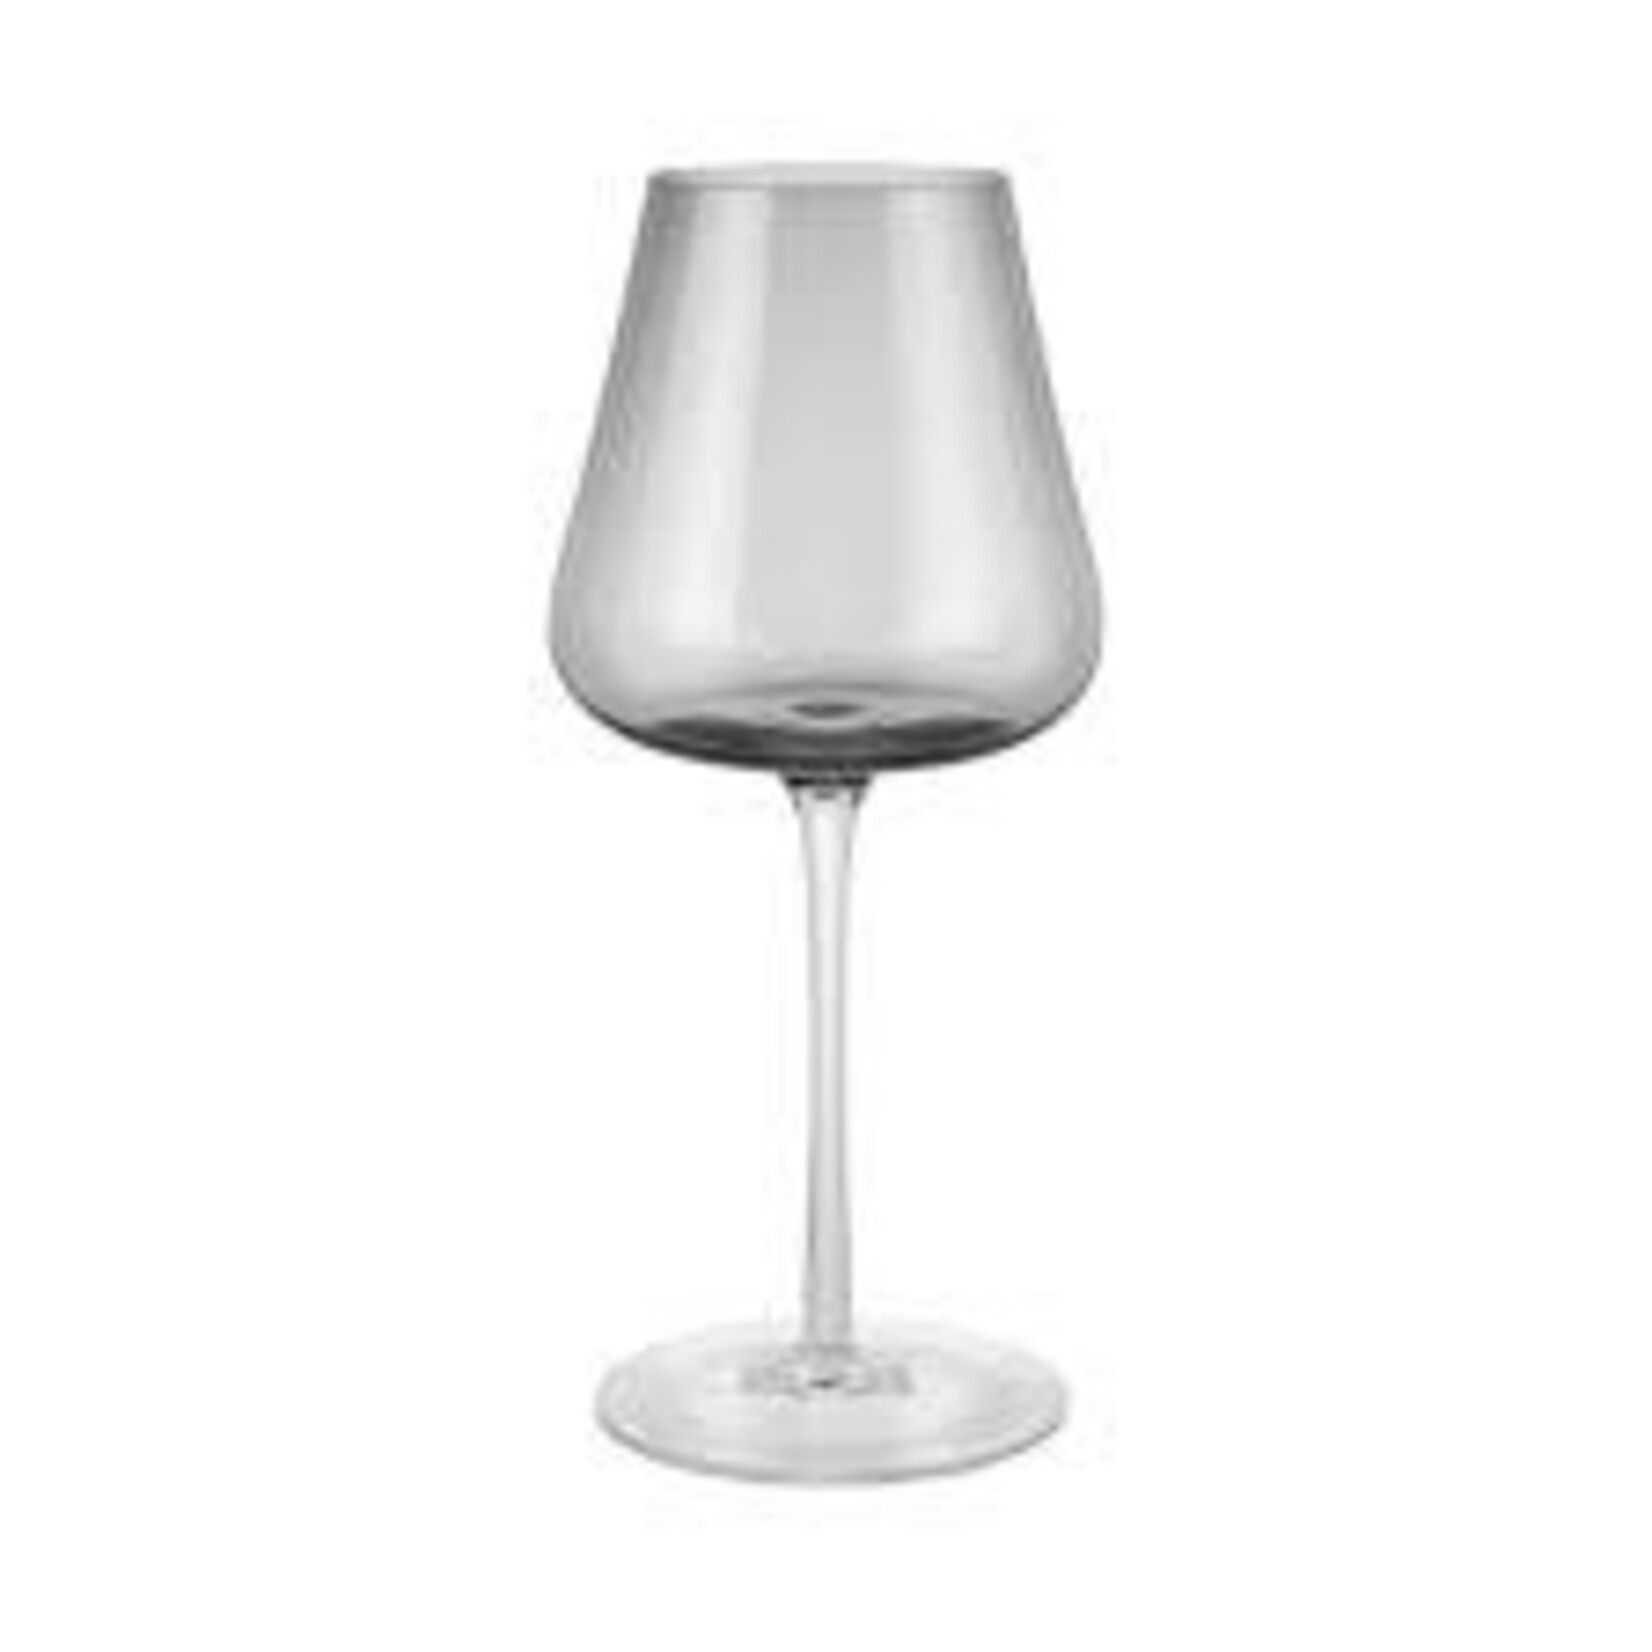 https://cdn.shoplightspeed.com/shops/634006/files/55048094/1652x1652x1/blomus-white-wine-glasses-set-of-2-belo.jpg